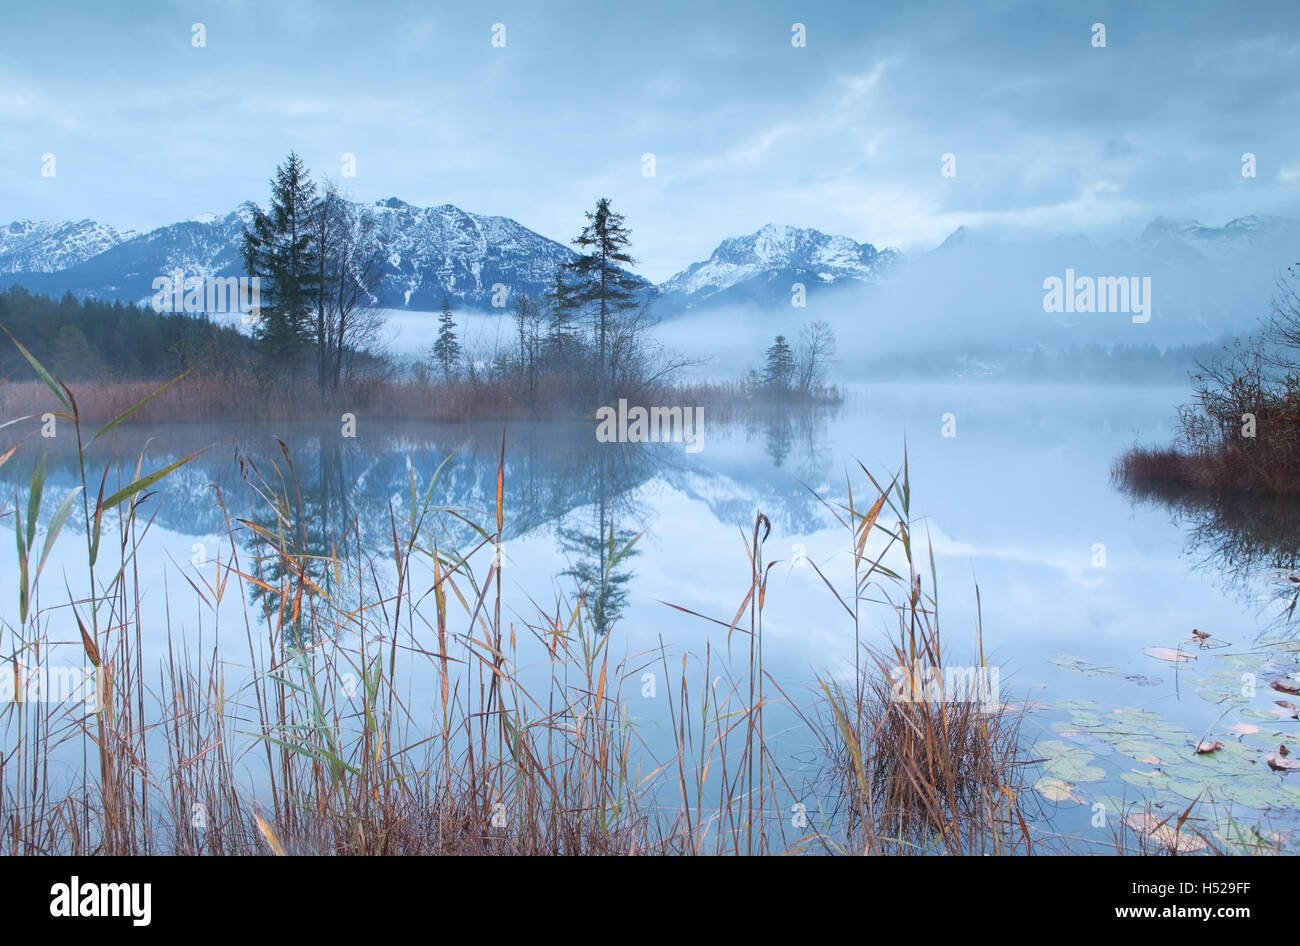 Karwendel mountain range reflected in lake Barmsee Stock Photo